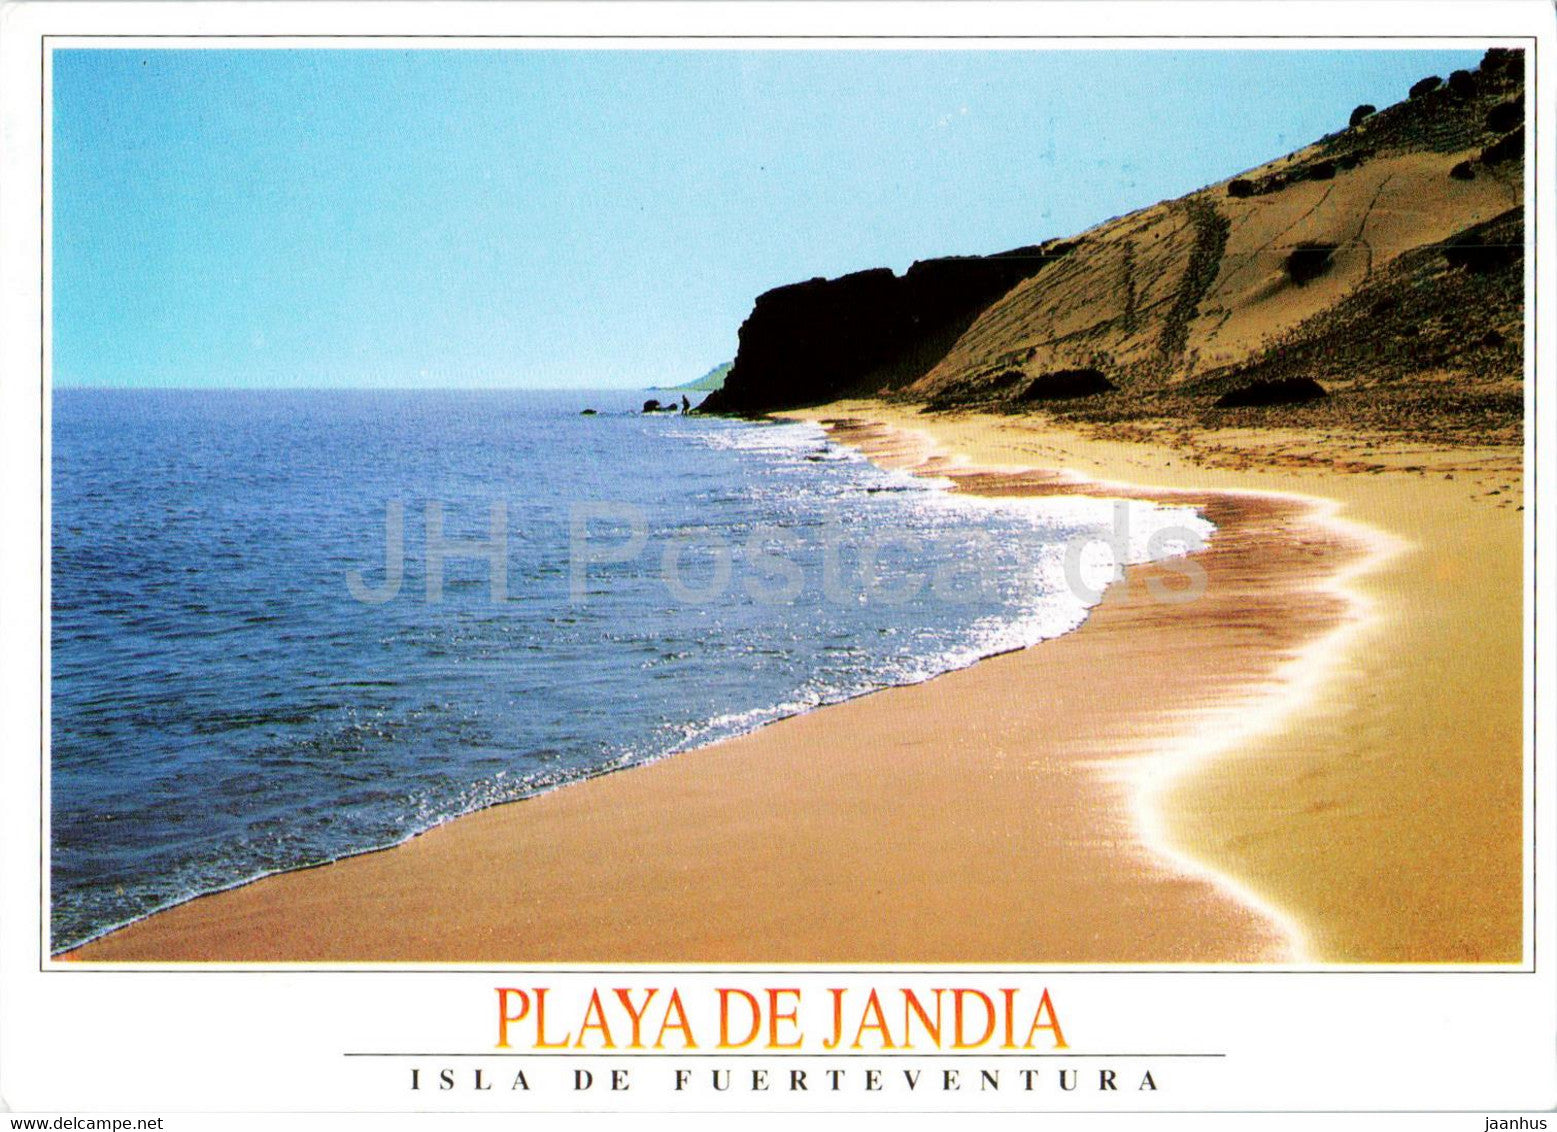 Playa de Jandia - Isla de Fuerteventura - Islas Canarias - 1995 - Spain - used - JH Postcards